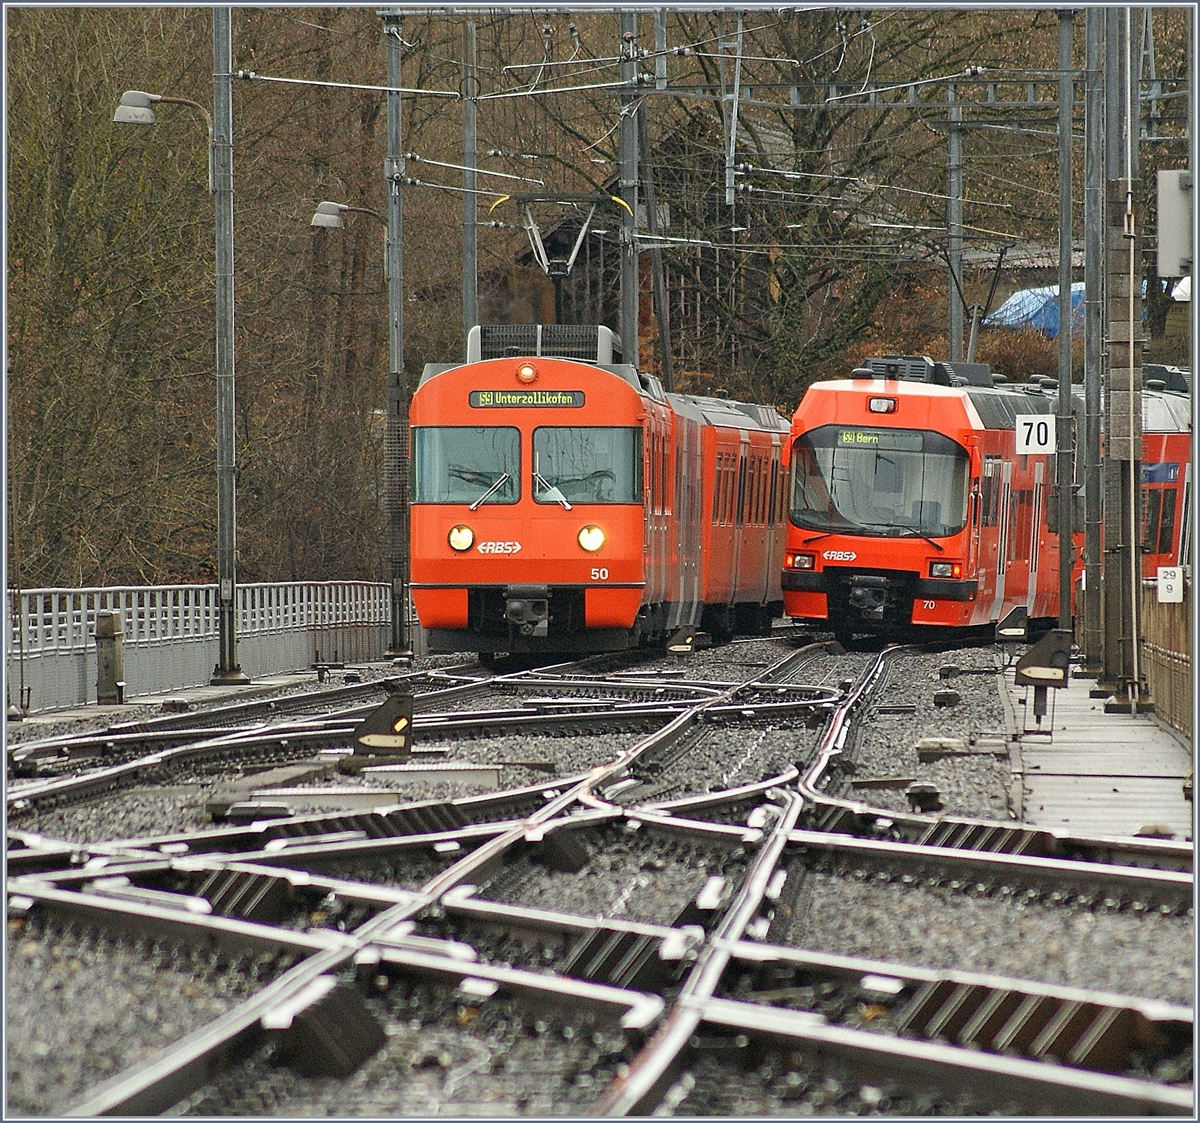 Der RBS Be 4/12 50  Mandarinli  als S9 nach Unterzollikofen begegnet bei Worblaufen seinem Gegenzug, dem Be 4/12 70  Seconda .
Die Strecke Worblaufen - Bern (RBS) gilt als die am dichtesten befahren Doppelspurstrecke der Schweiz.
26. Feb. 2010